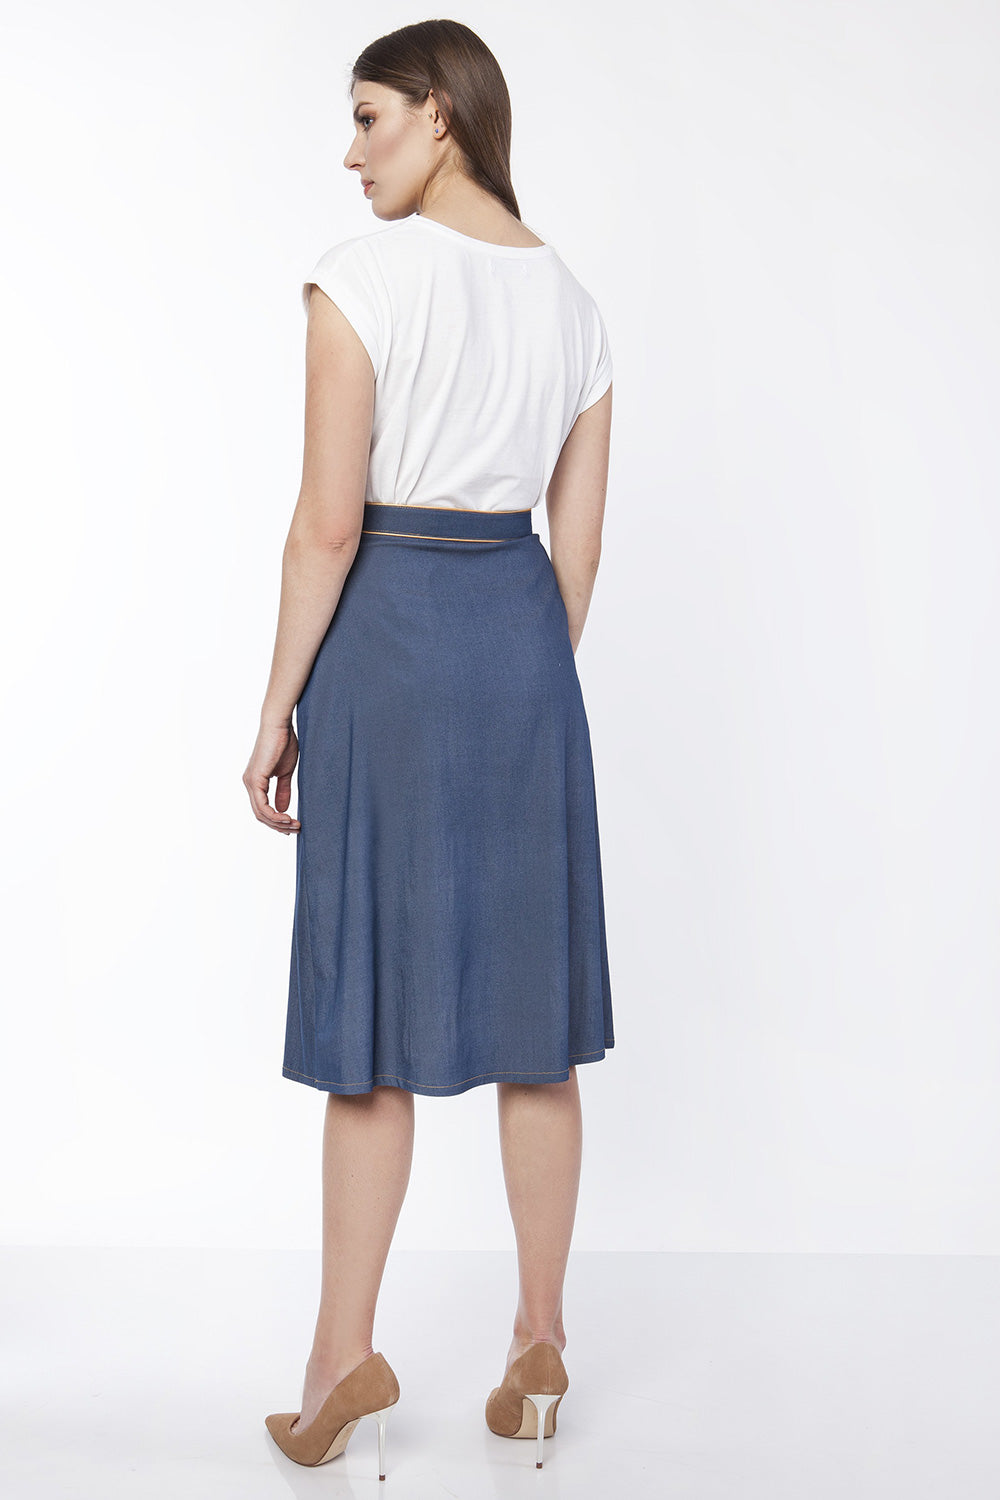 Skirt model 151200 Lanti